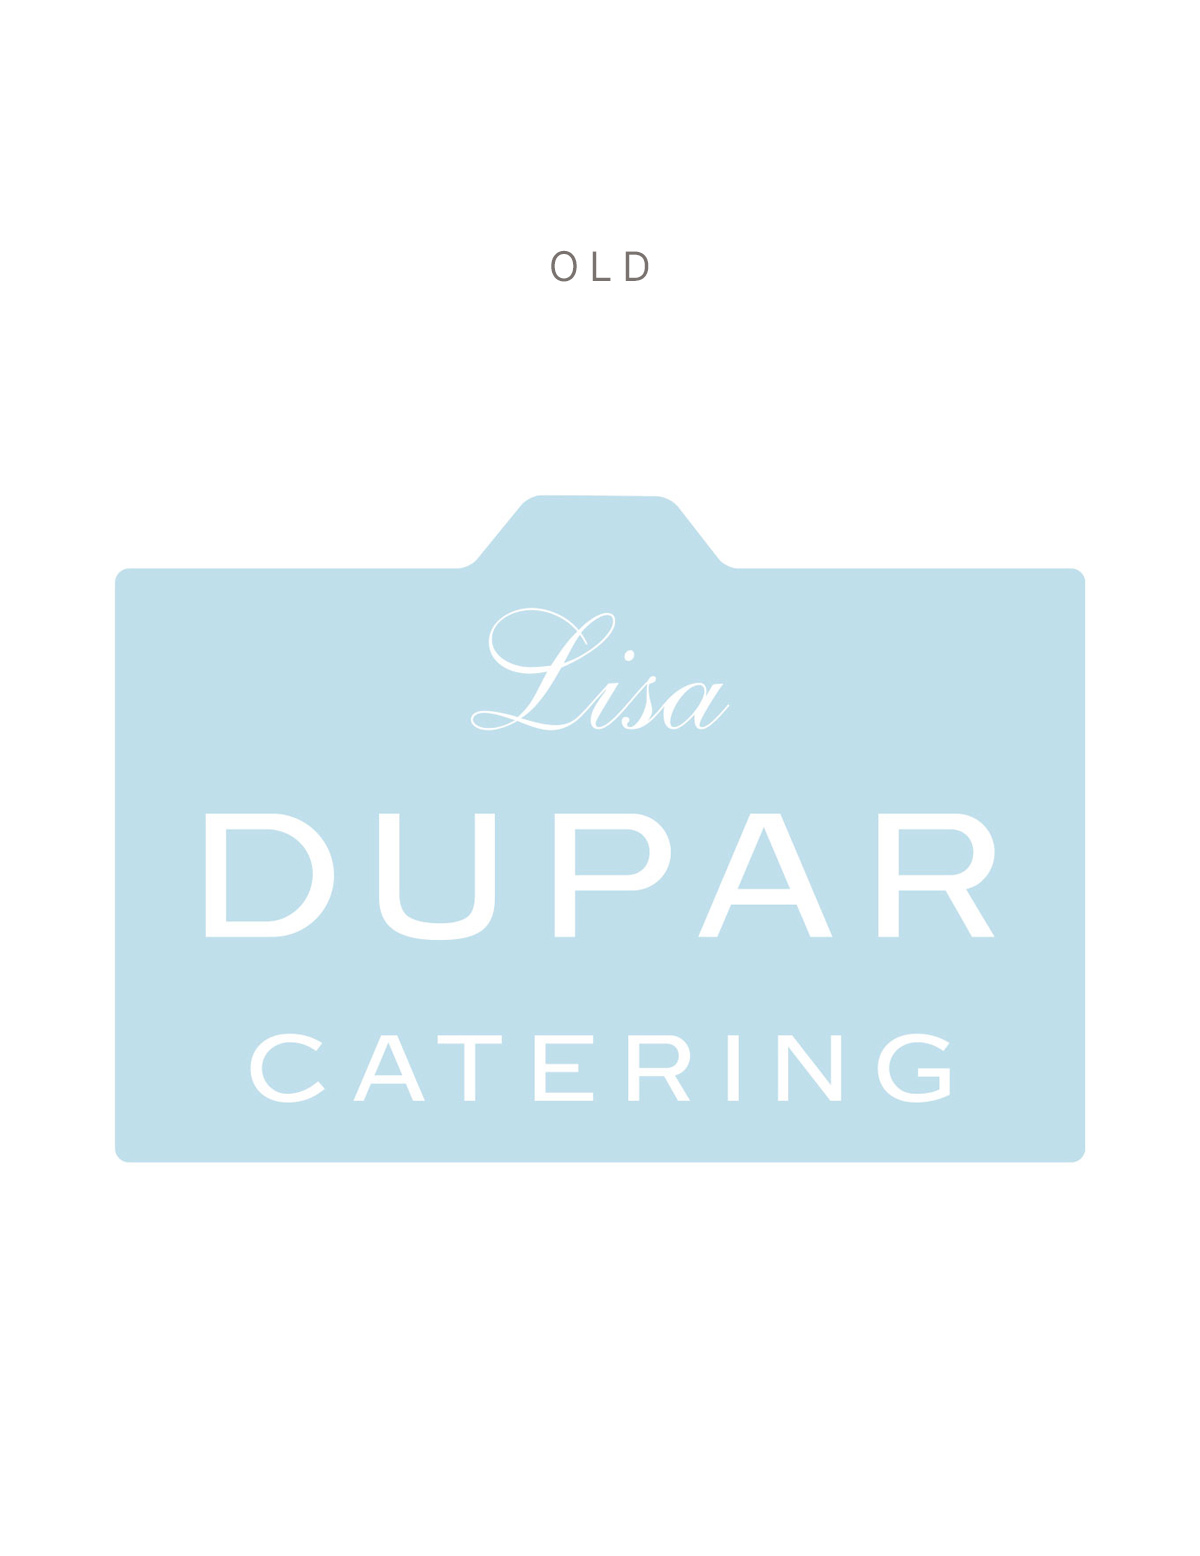 Lisa Dupar Catering Old Logo